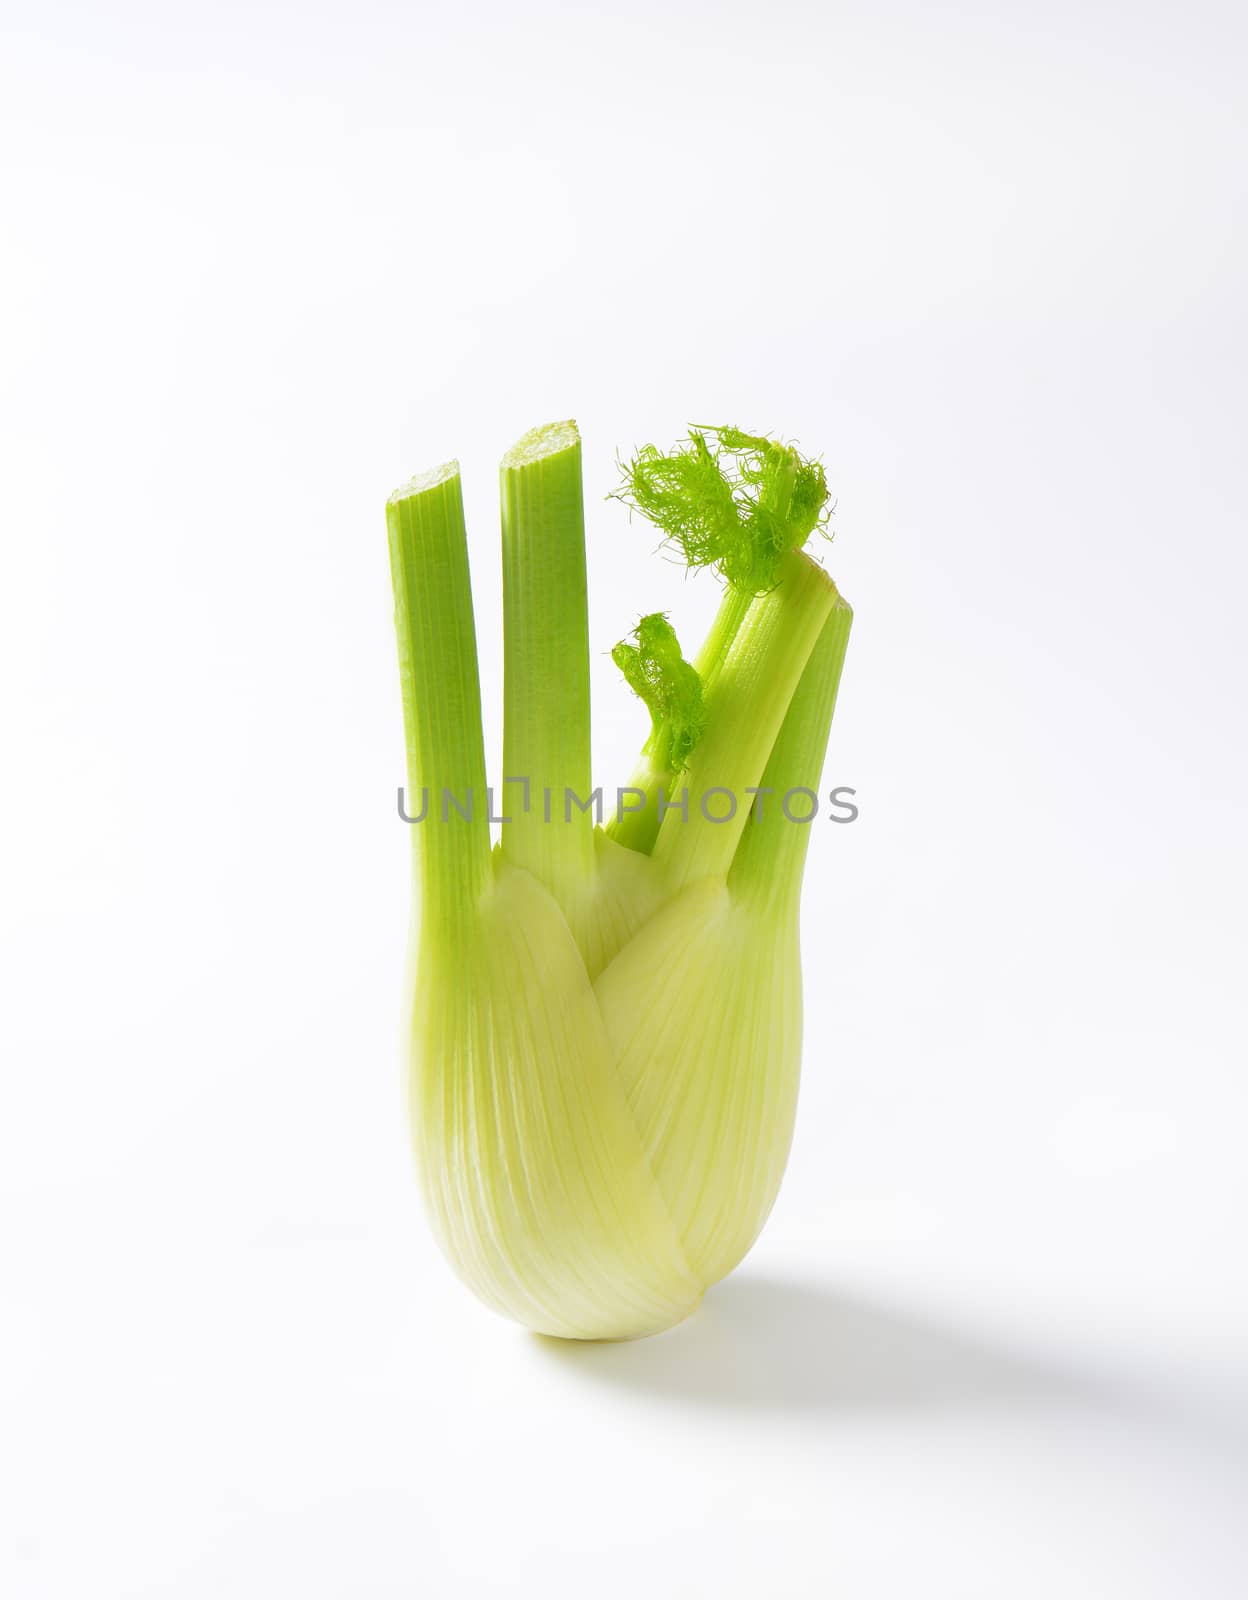 bulb of fresh fennel by Digifoodstock